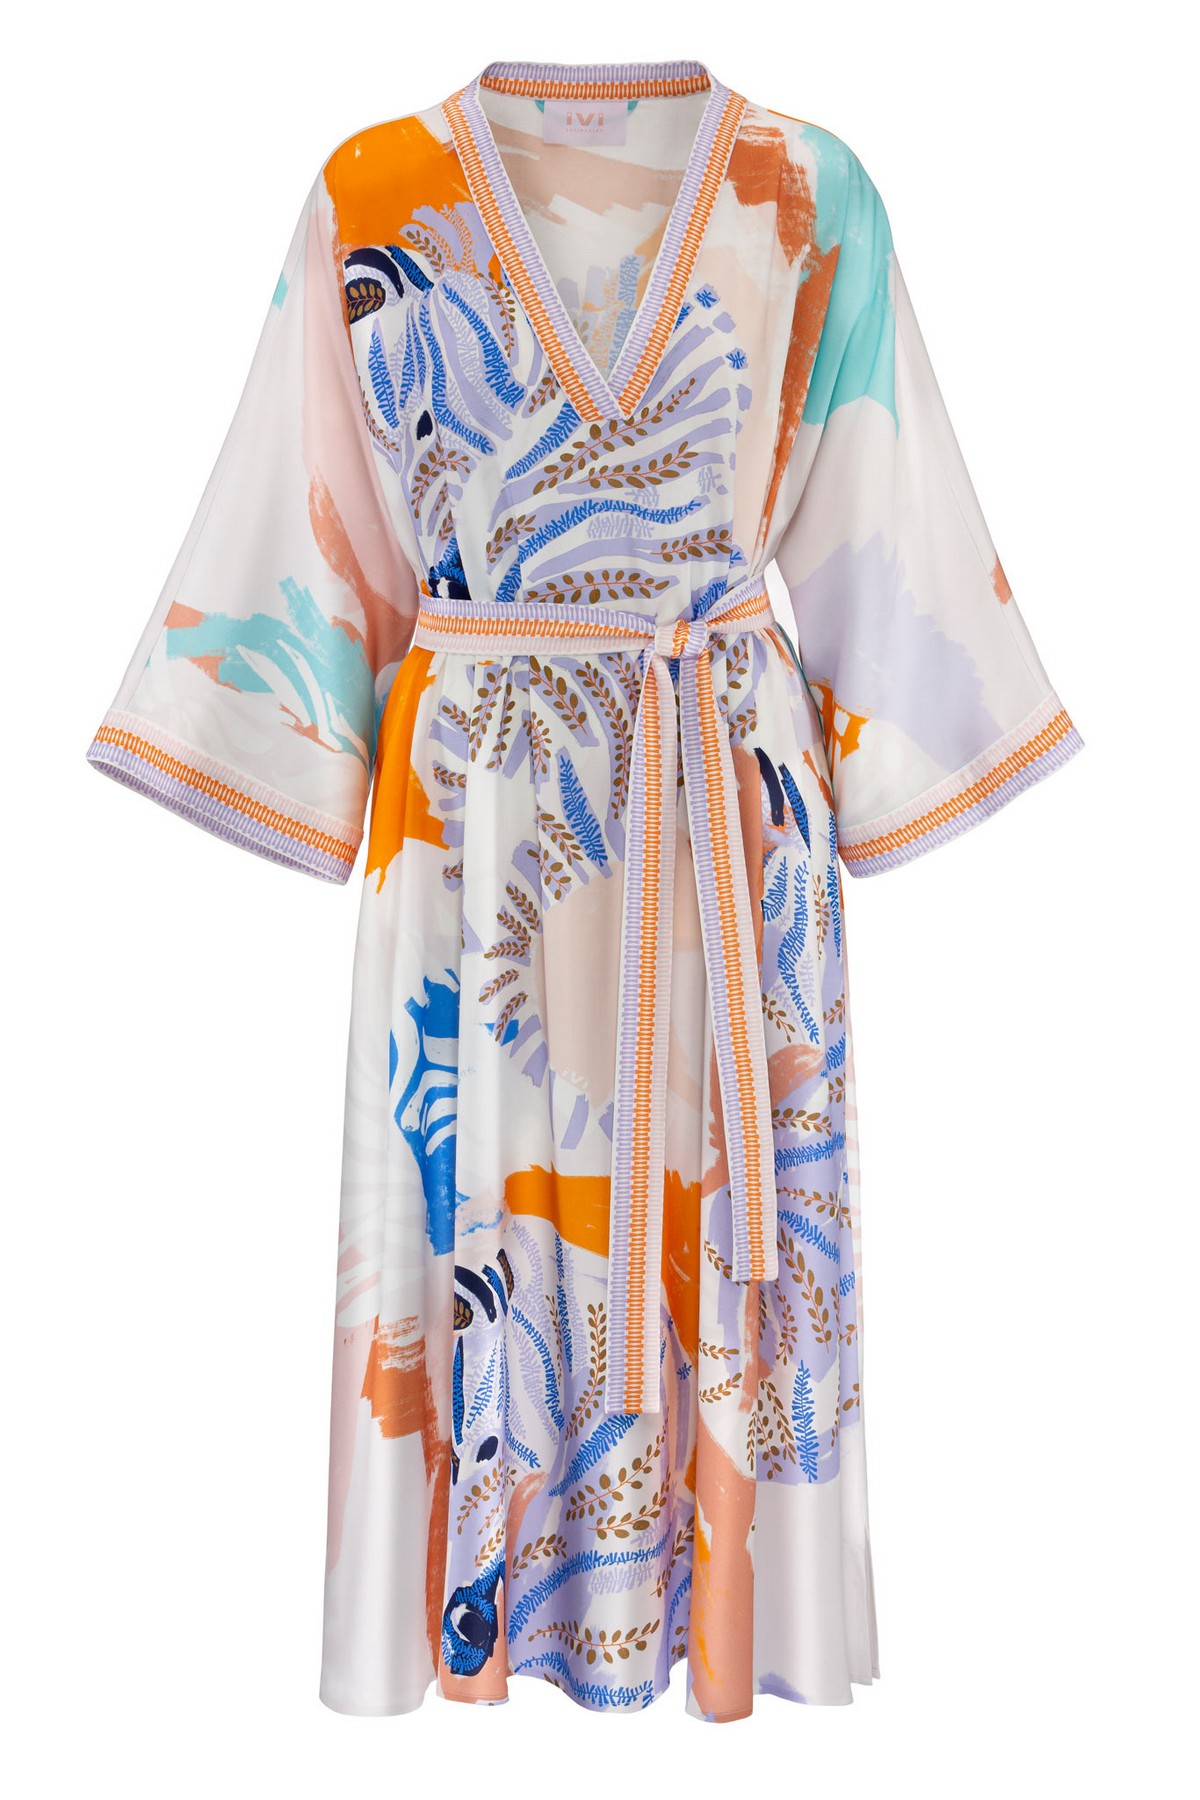 Kaftan kleed V print viscose in de kleur wit oranje blauw van het merk Ivi Collection